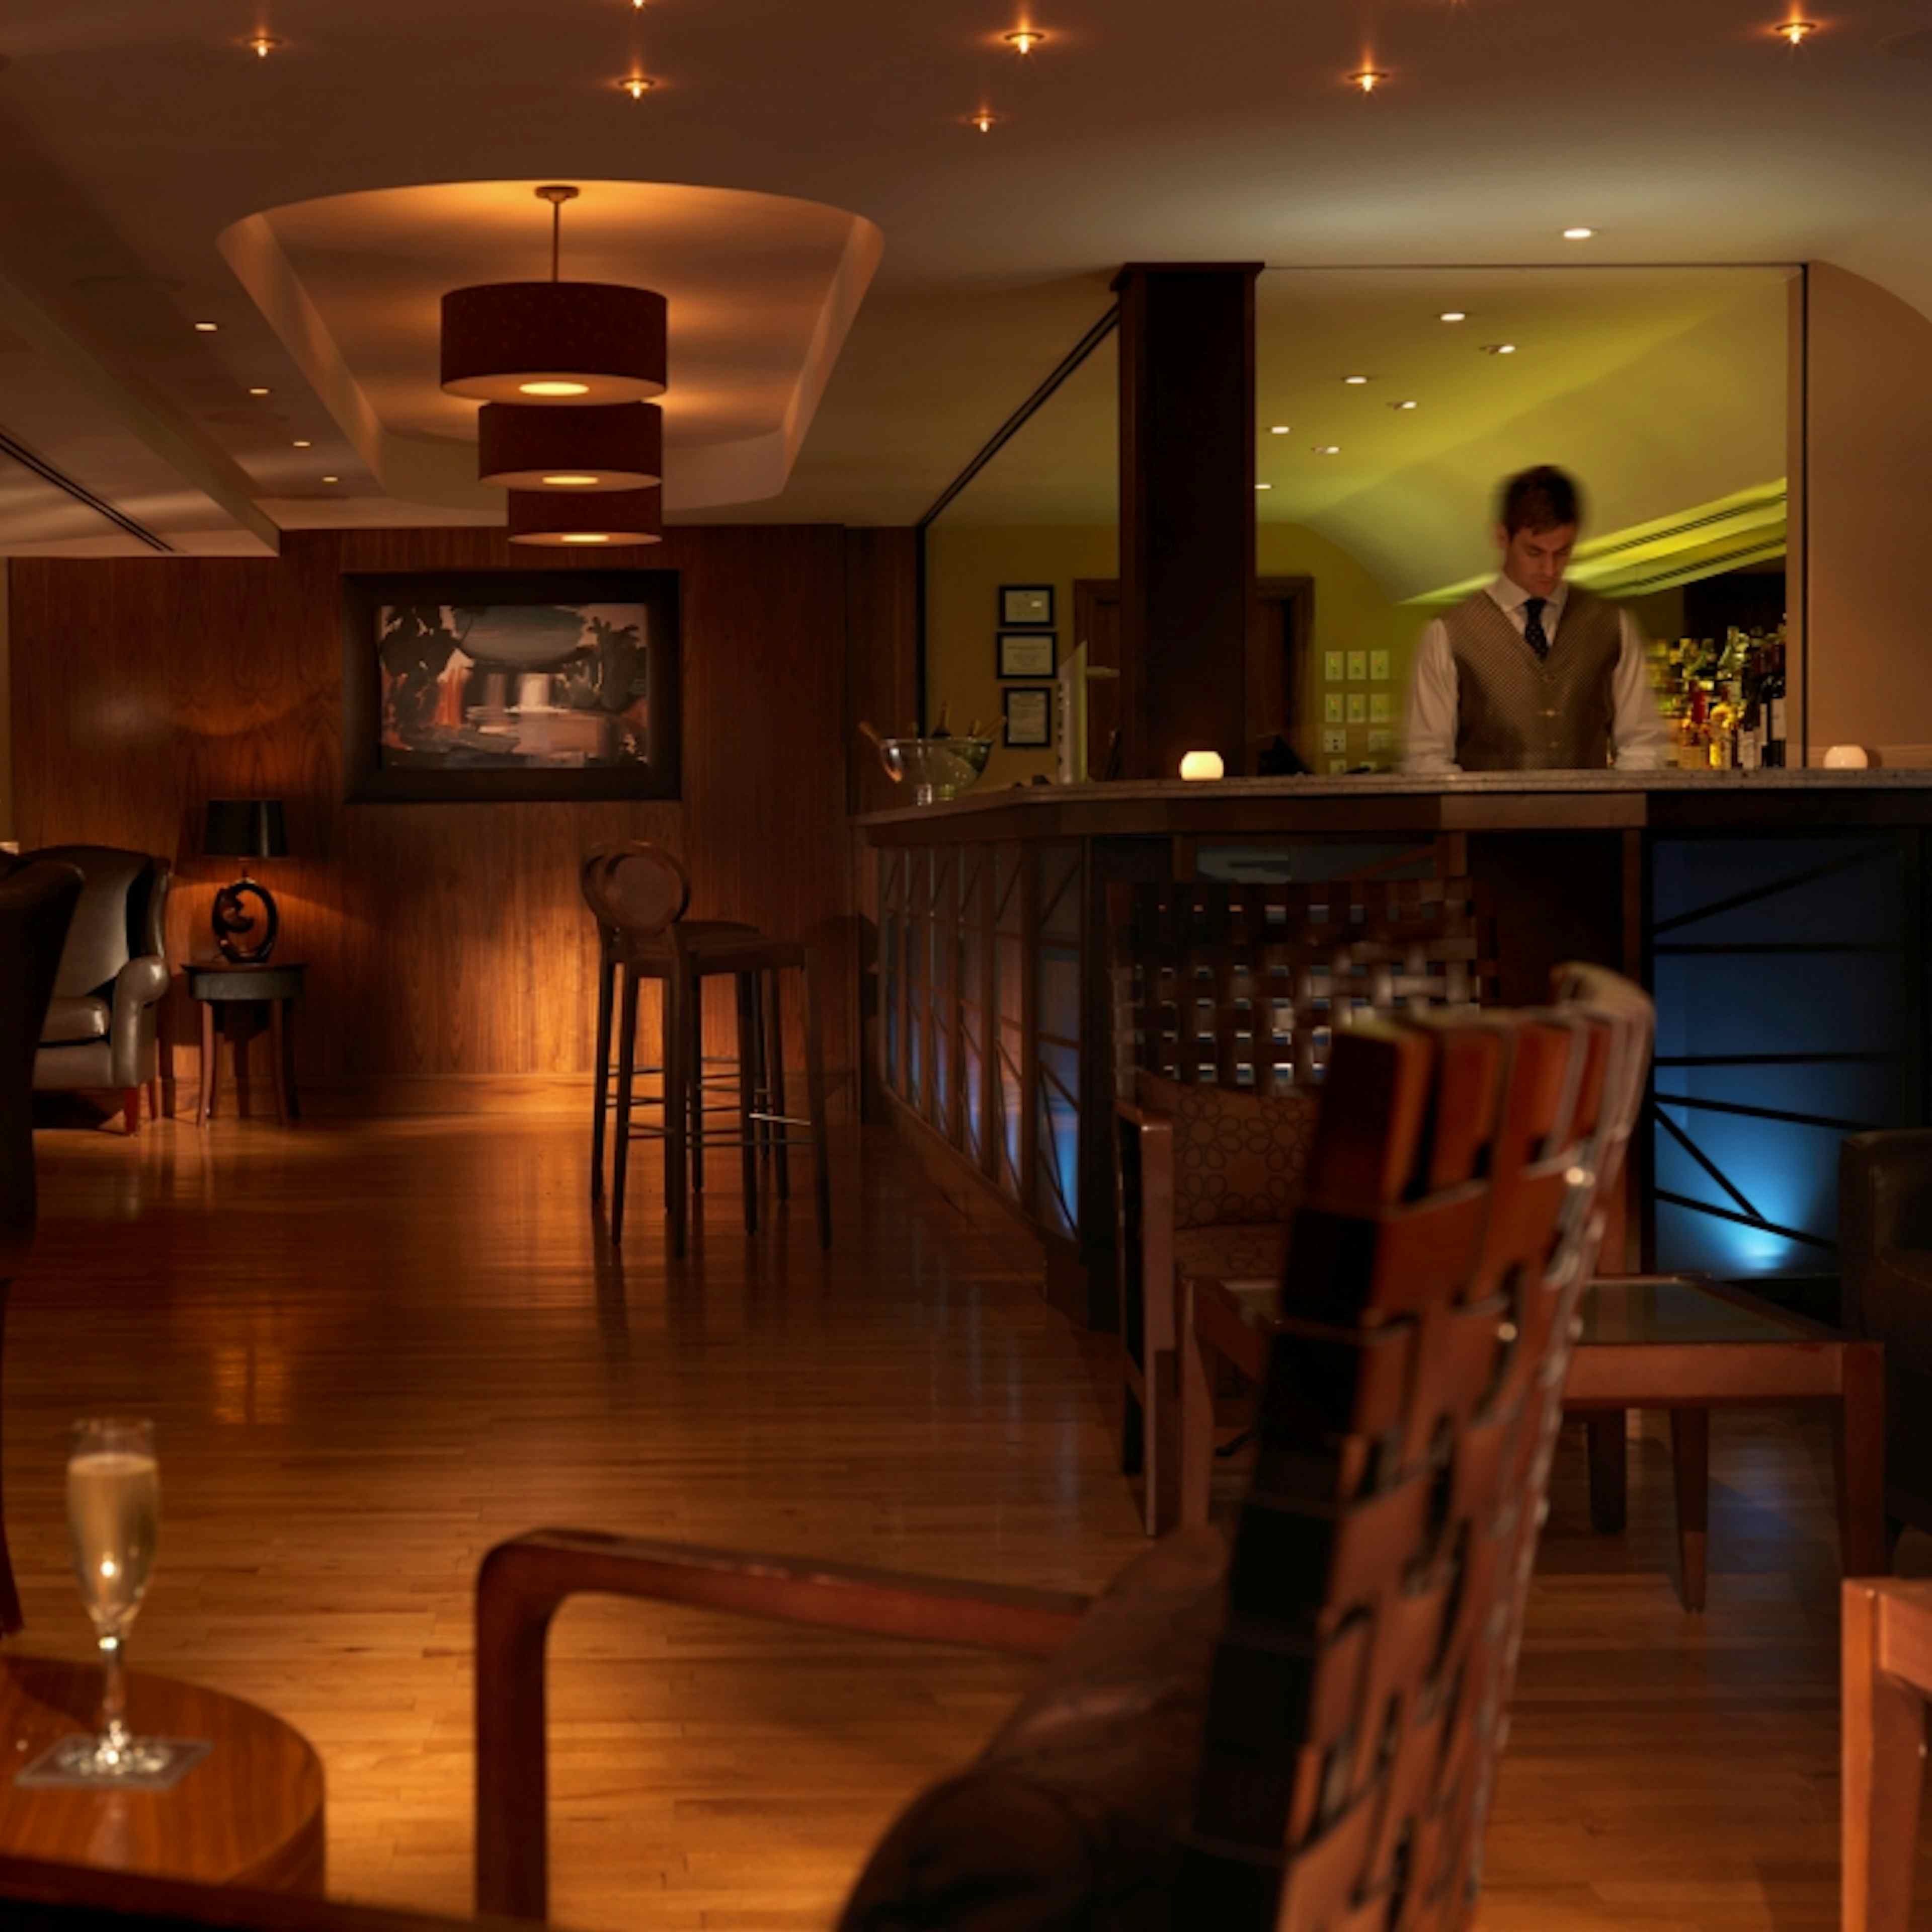 Royal Garden Hotel - Bertie's Bar - Mezzanine Level image 1